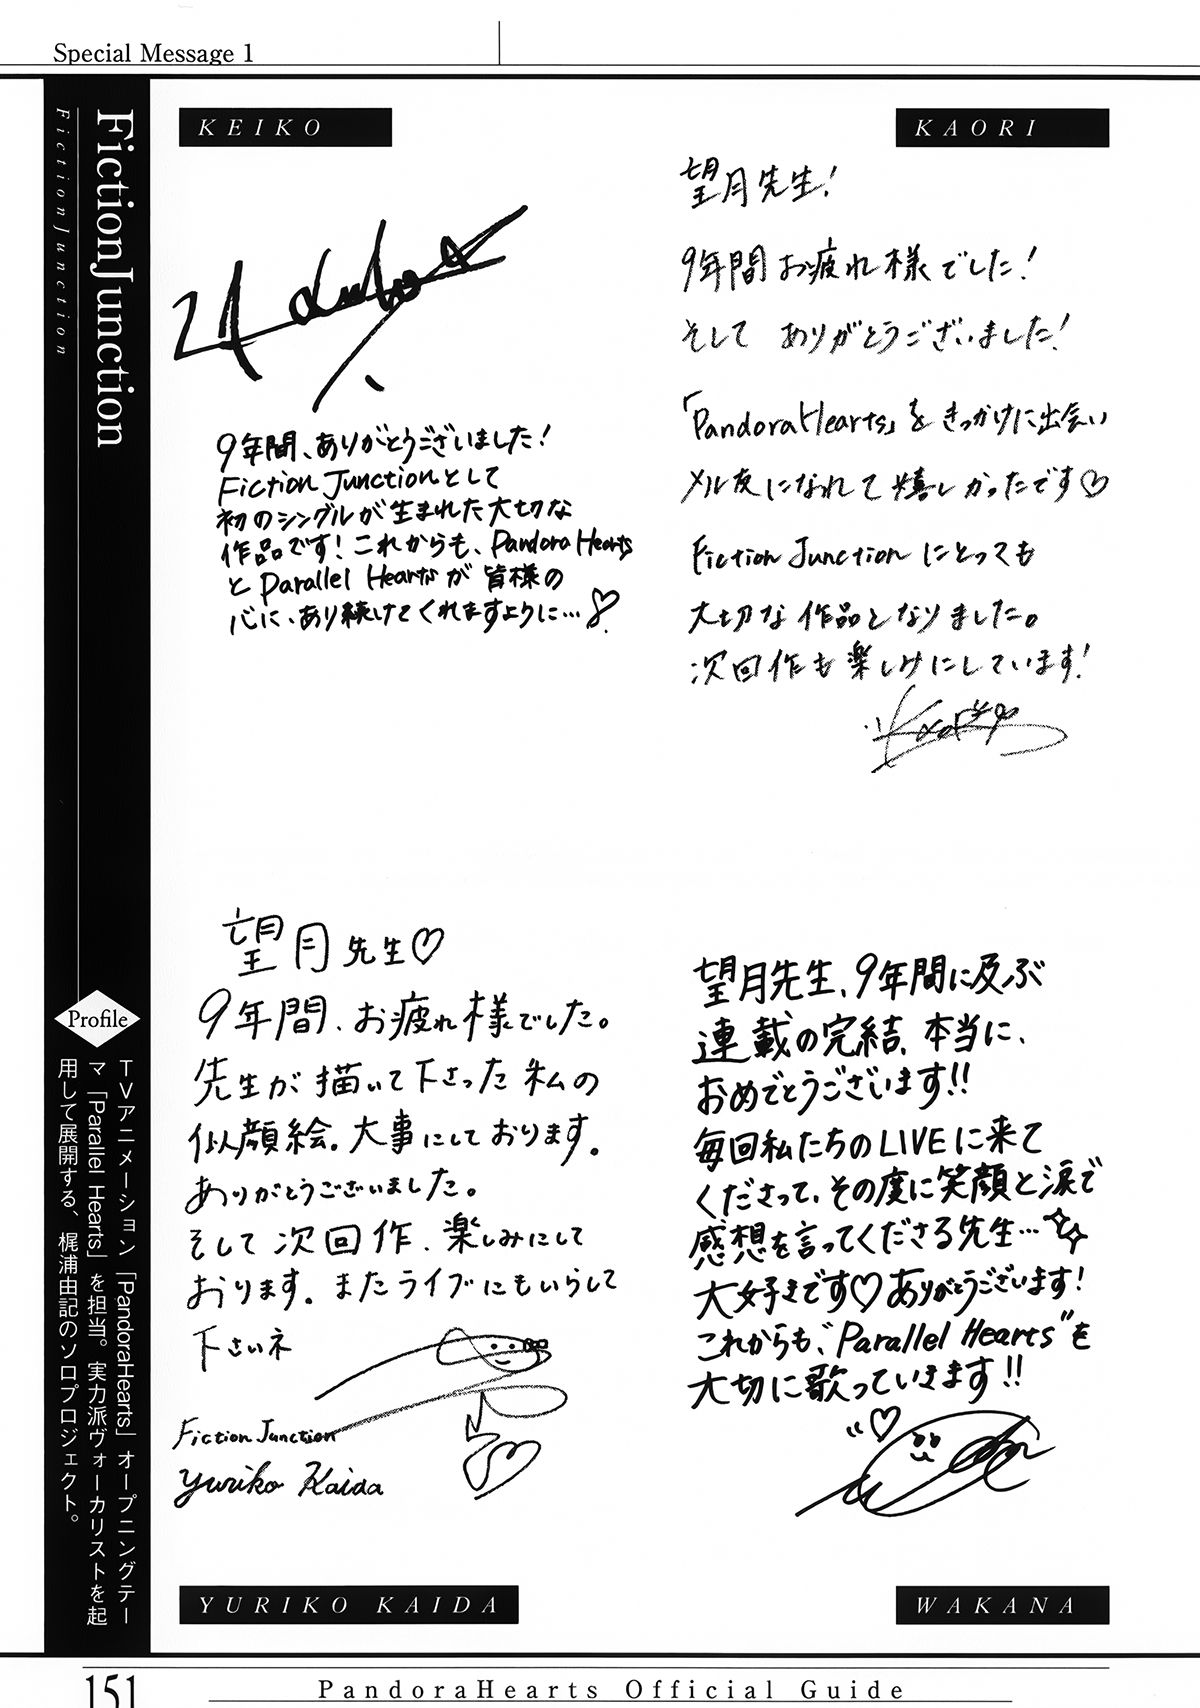 Pandora Hearts Guidebook 24+1: Last Dance パンドラハーツ オフィシャルガイド 24 + 1 ~Last Dance! 155